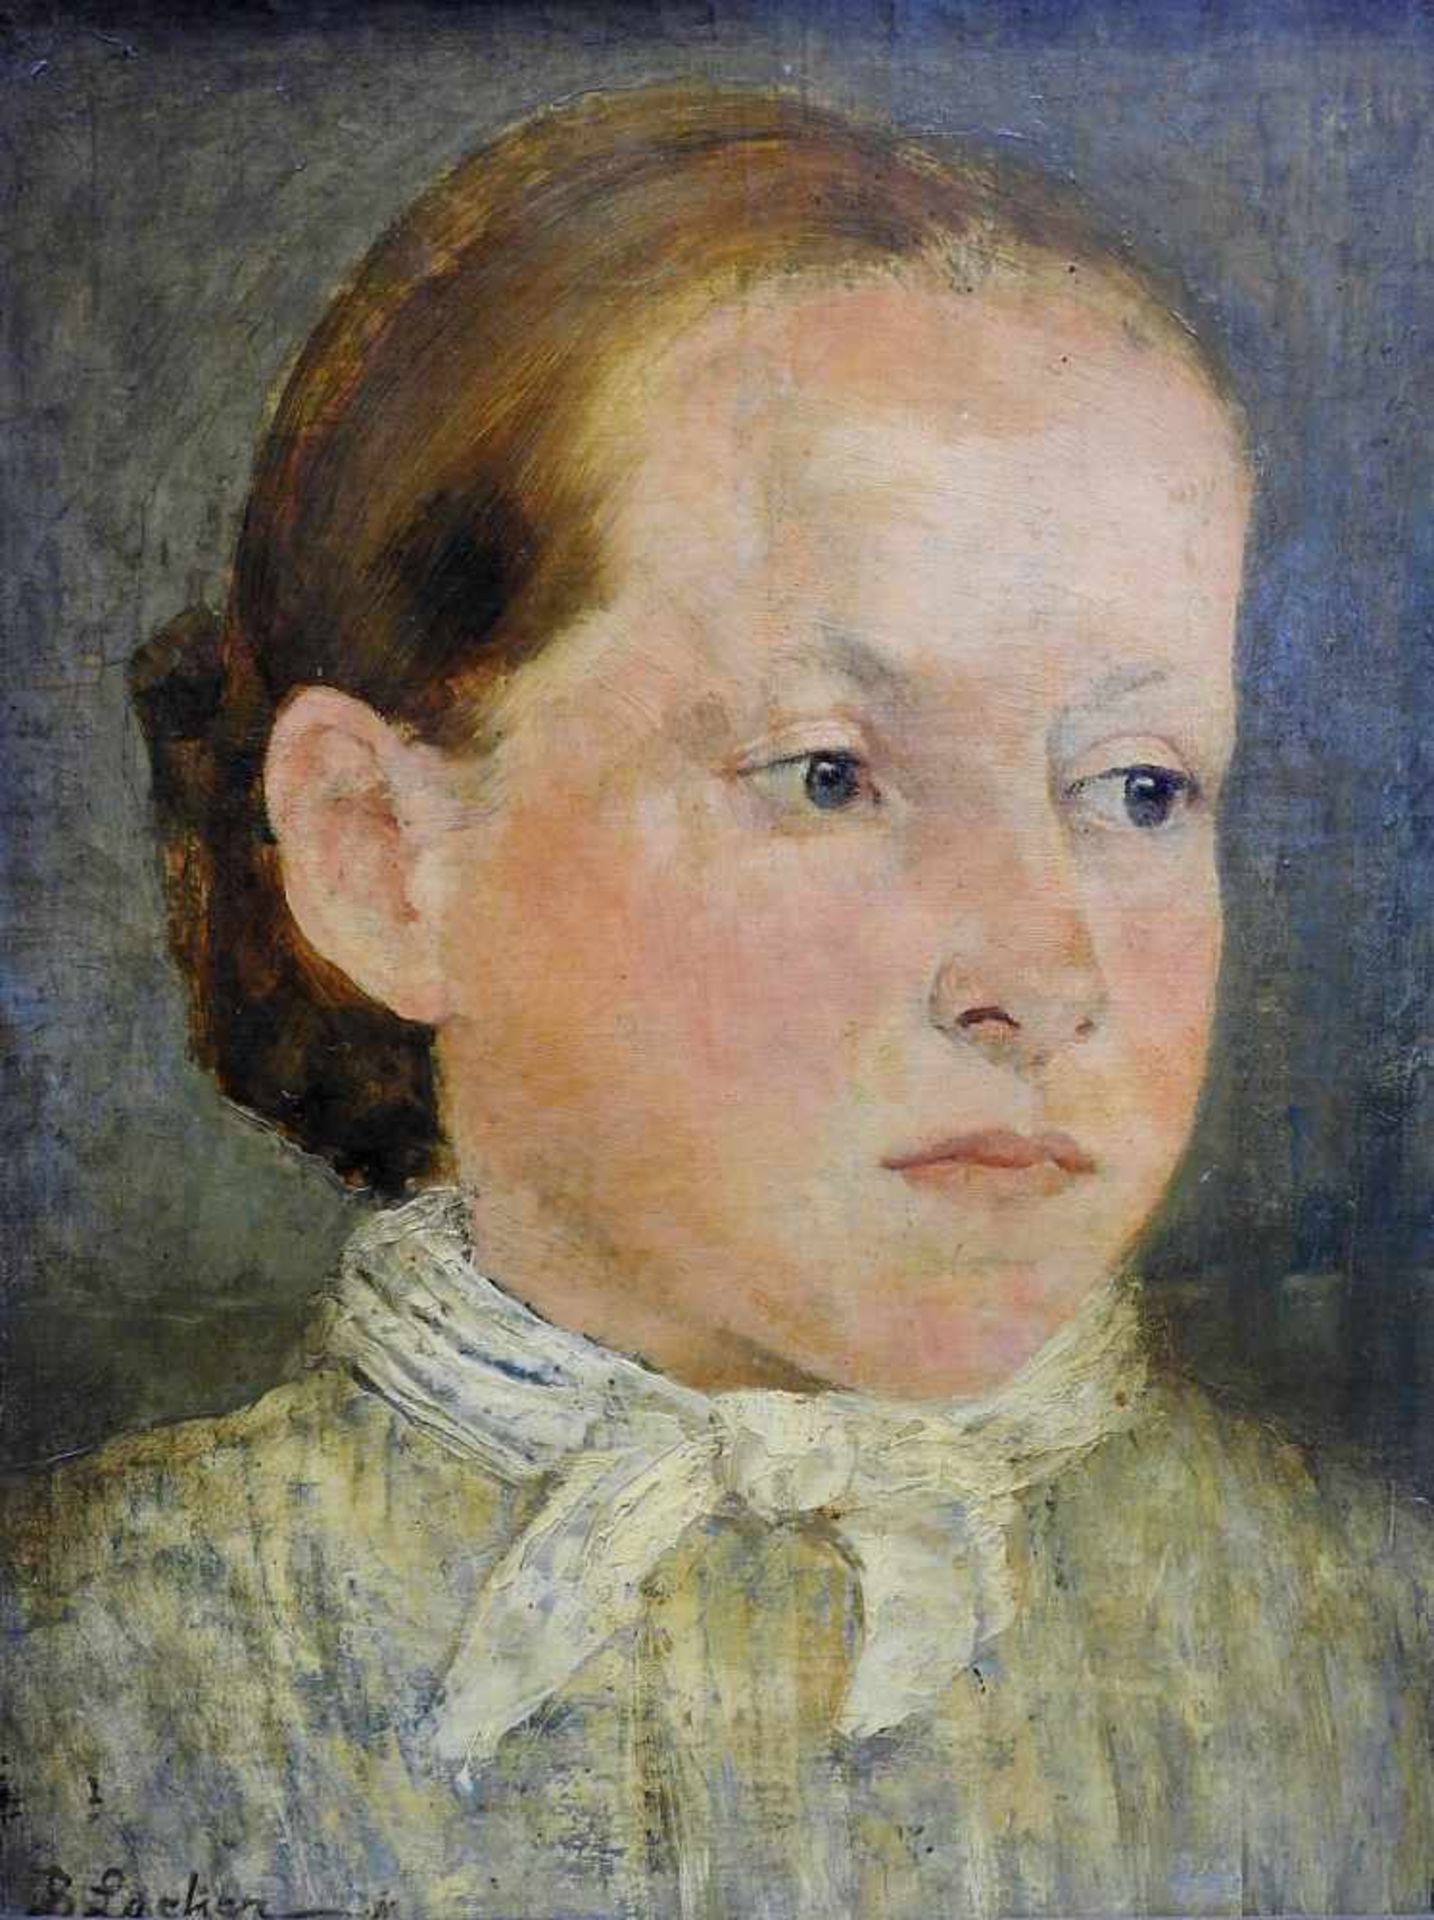 Porträt eines MädchensÖl/Hartfaserplatte. Porträt eines Mädchens mit nachdenklichem Blick. Links